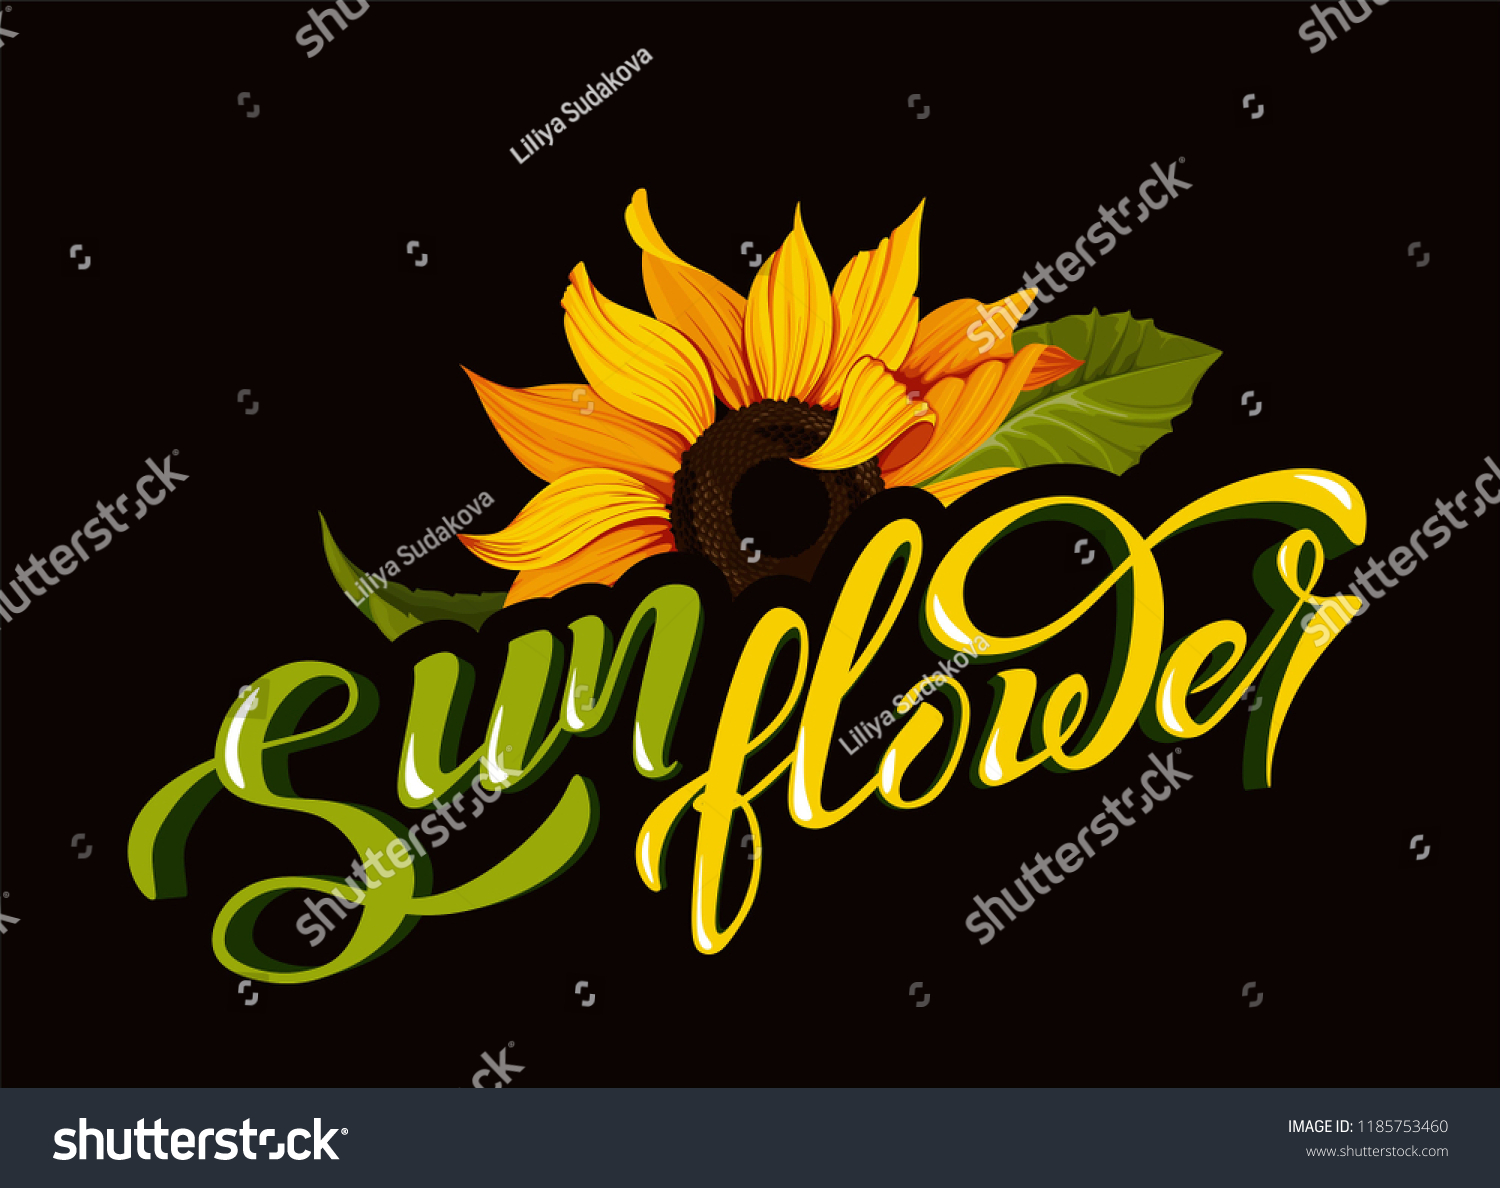 Sunflower Vector Clip Art Hand Lettering Stock Vector Royalty Free 1185753460 Shutterstock 7593